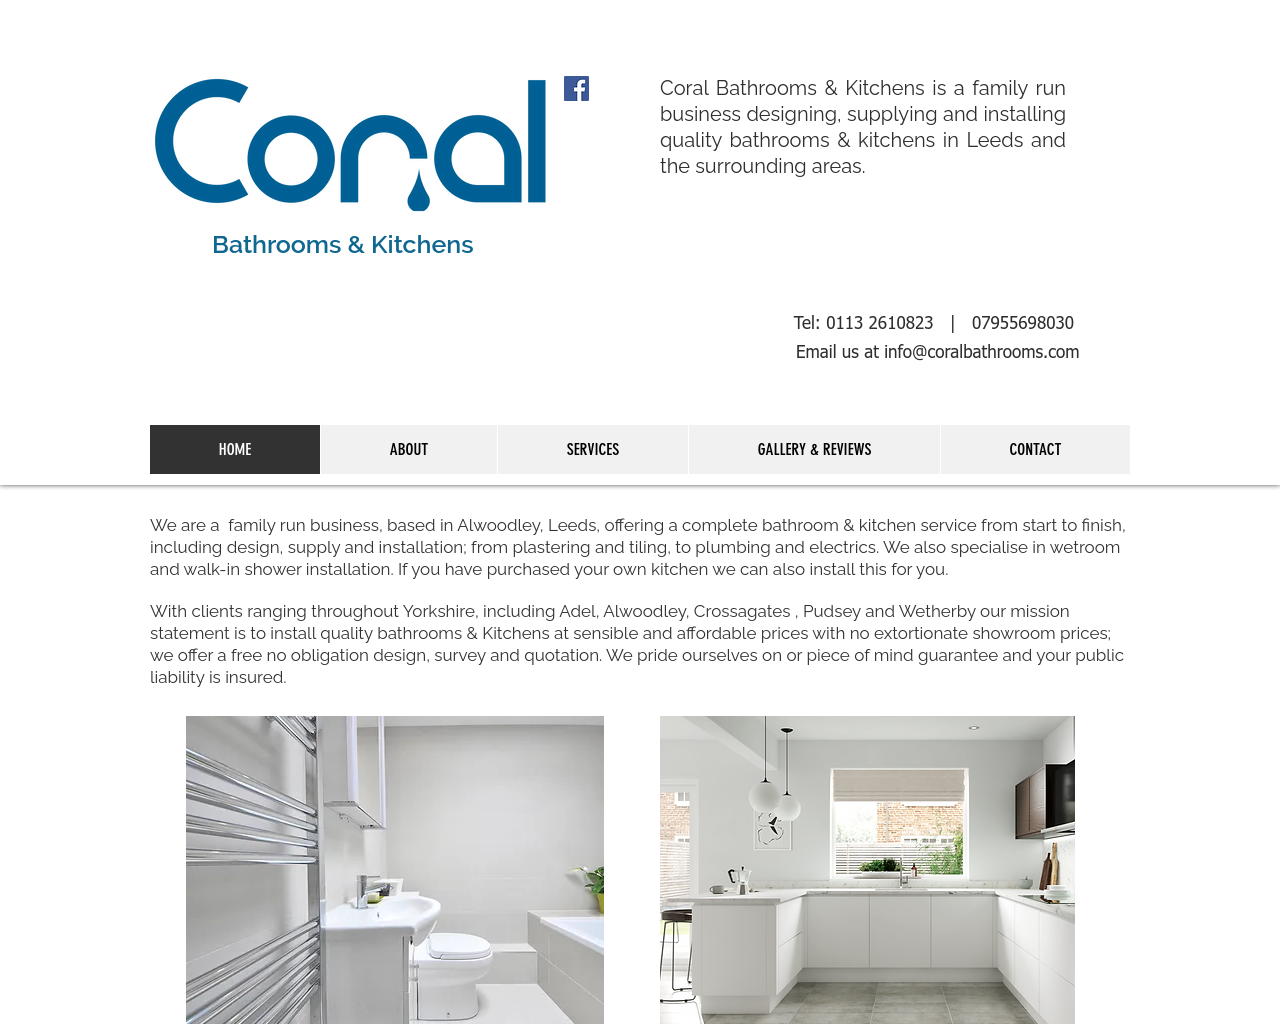 coralbathrooms.com